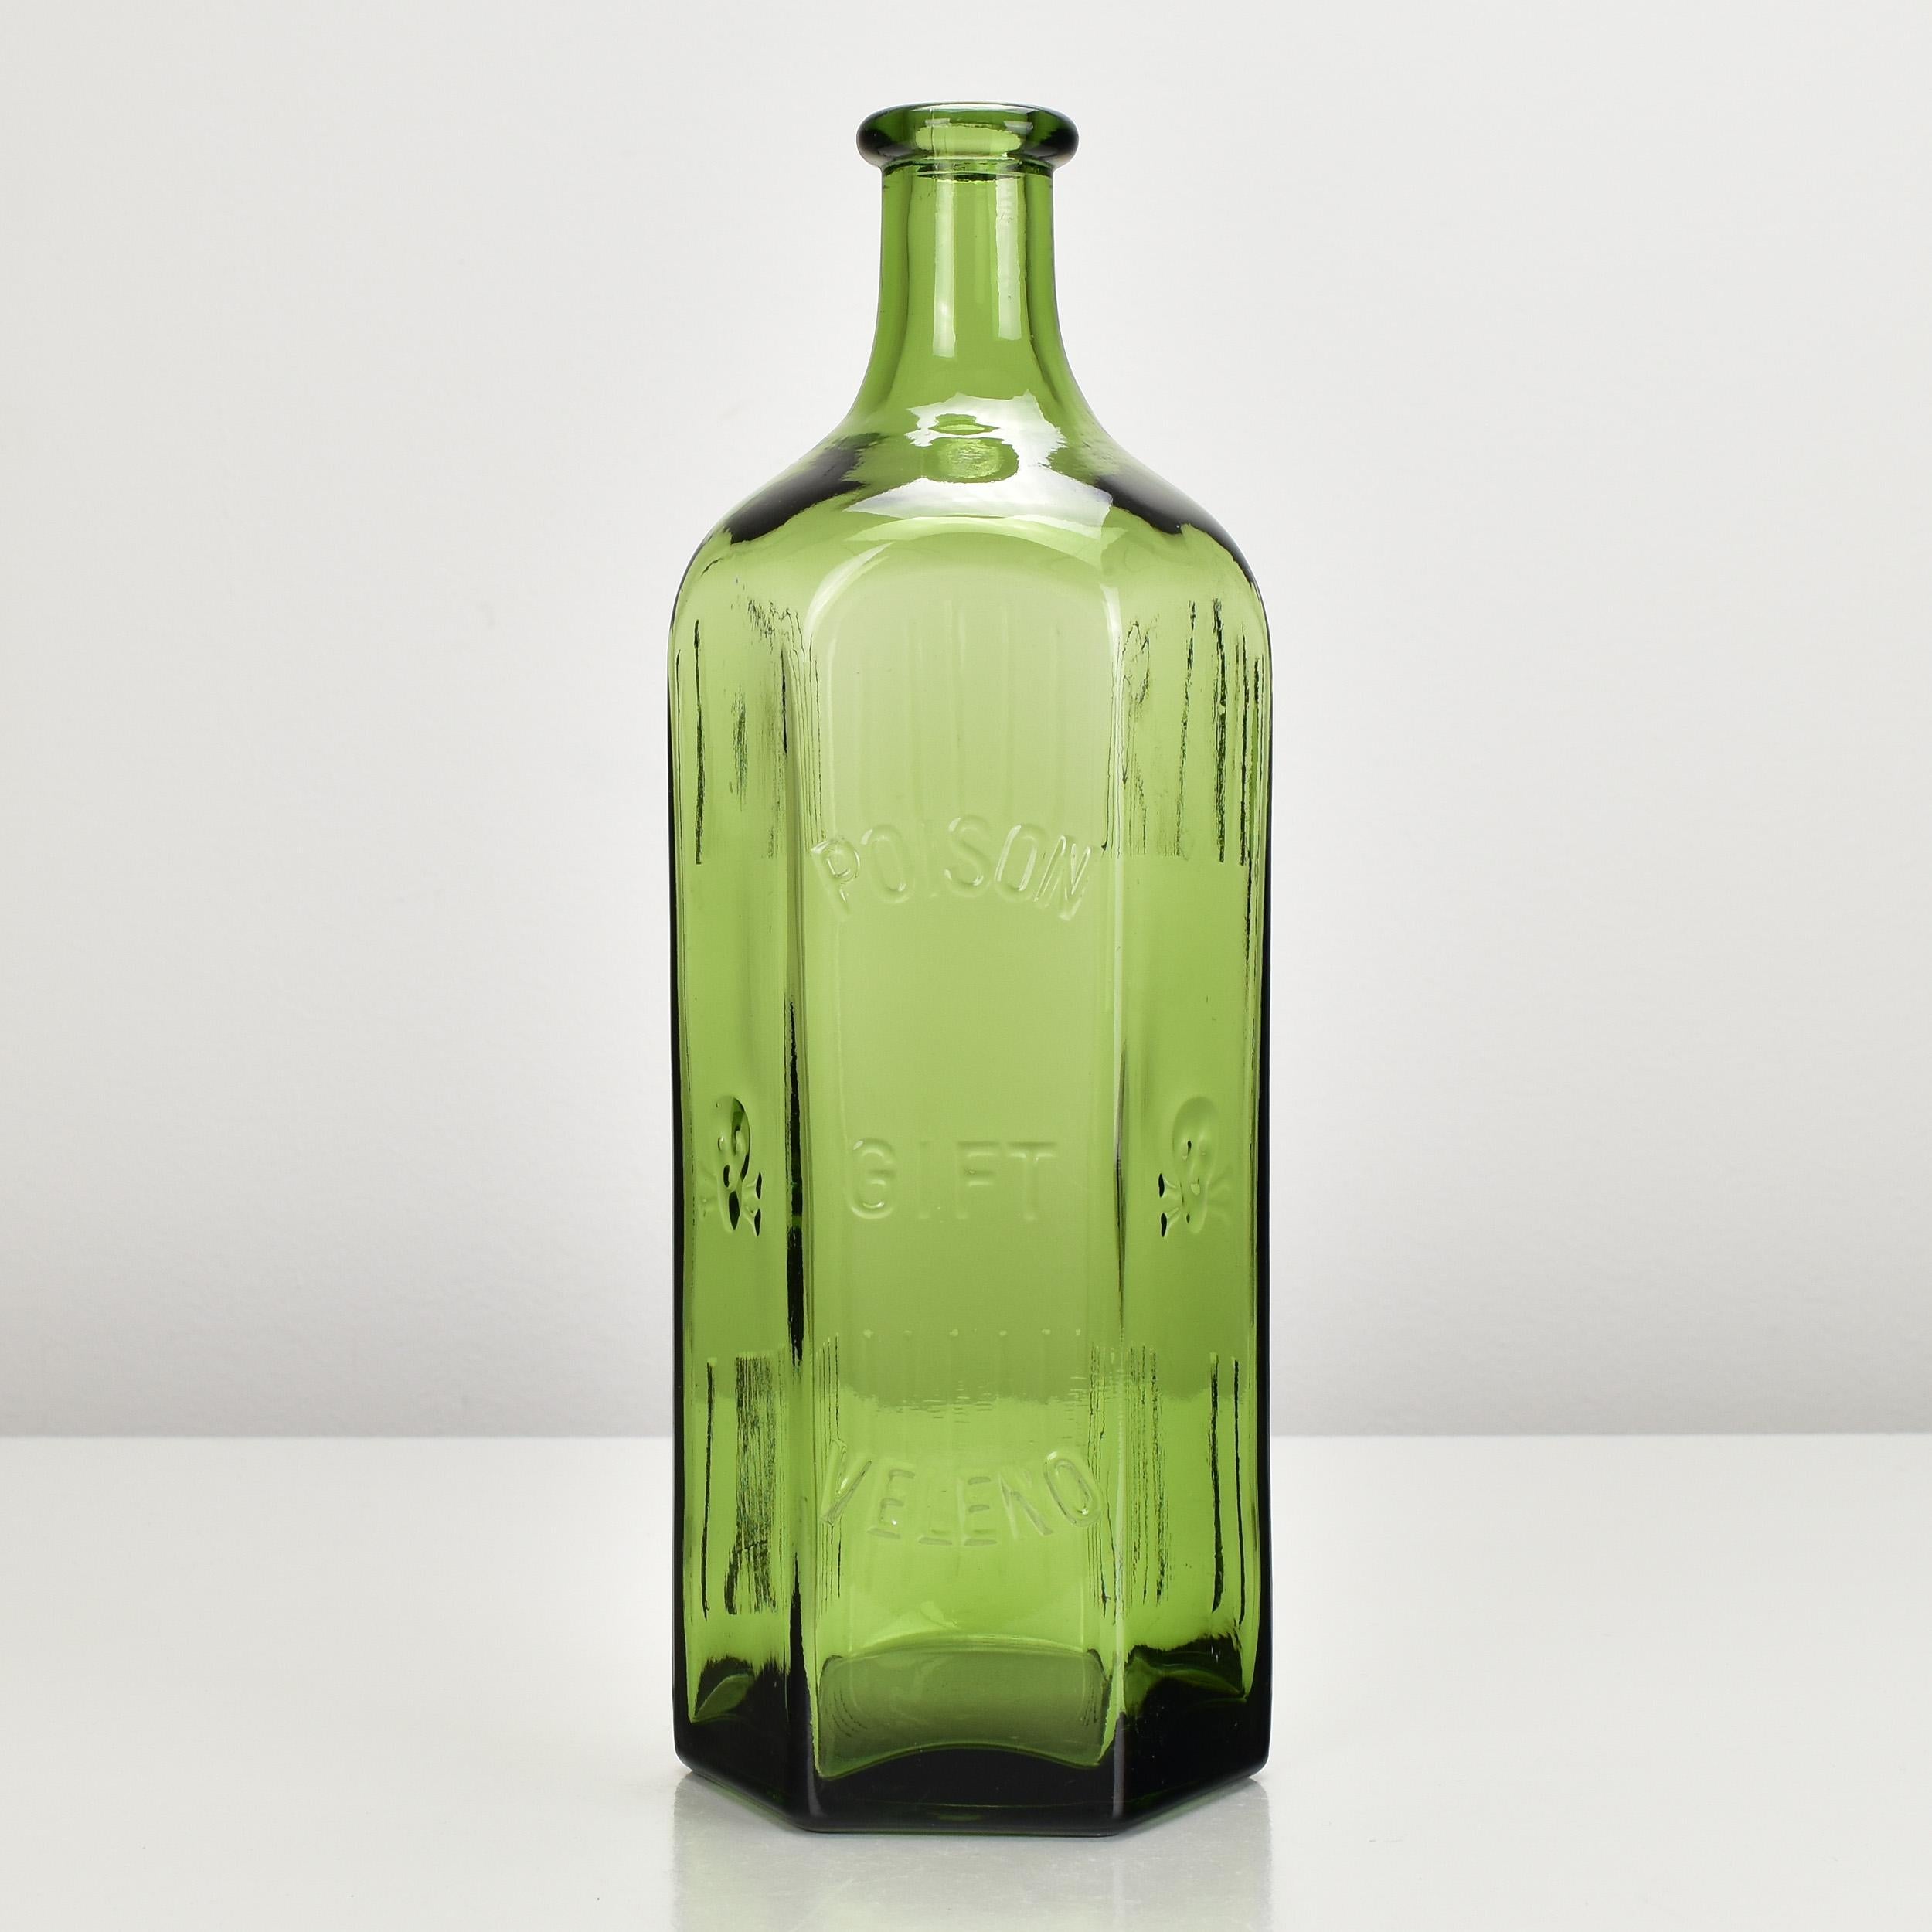 Eine seltene antike oder Vintage-Giftflasche aus grünem Glas in großem Format mit Relief-Totenkopf und gekreuzten Knochen. Großartiges Dekorationsstück oder Blumenvase.